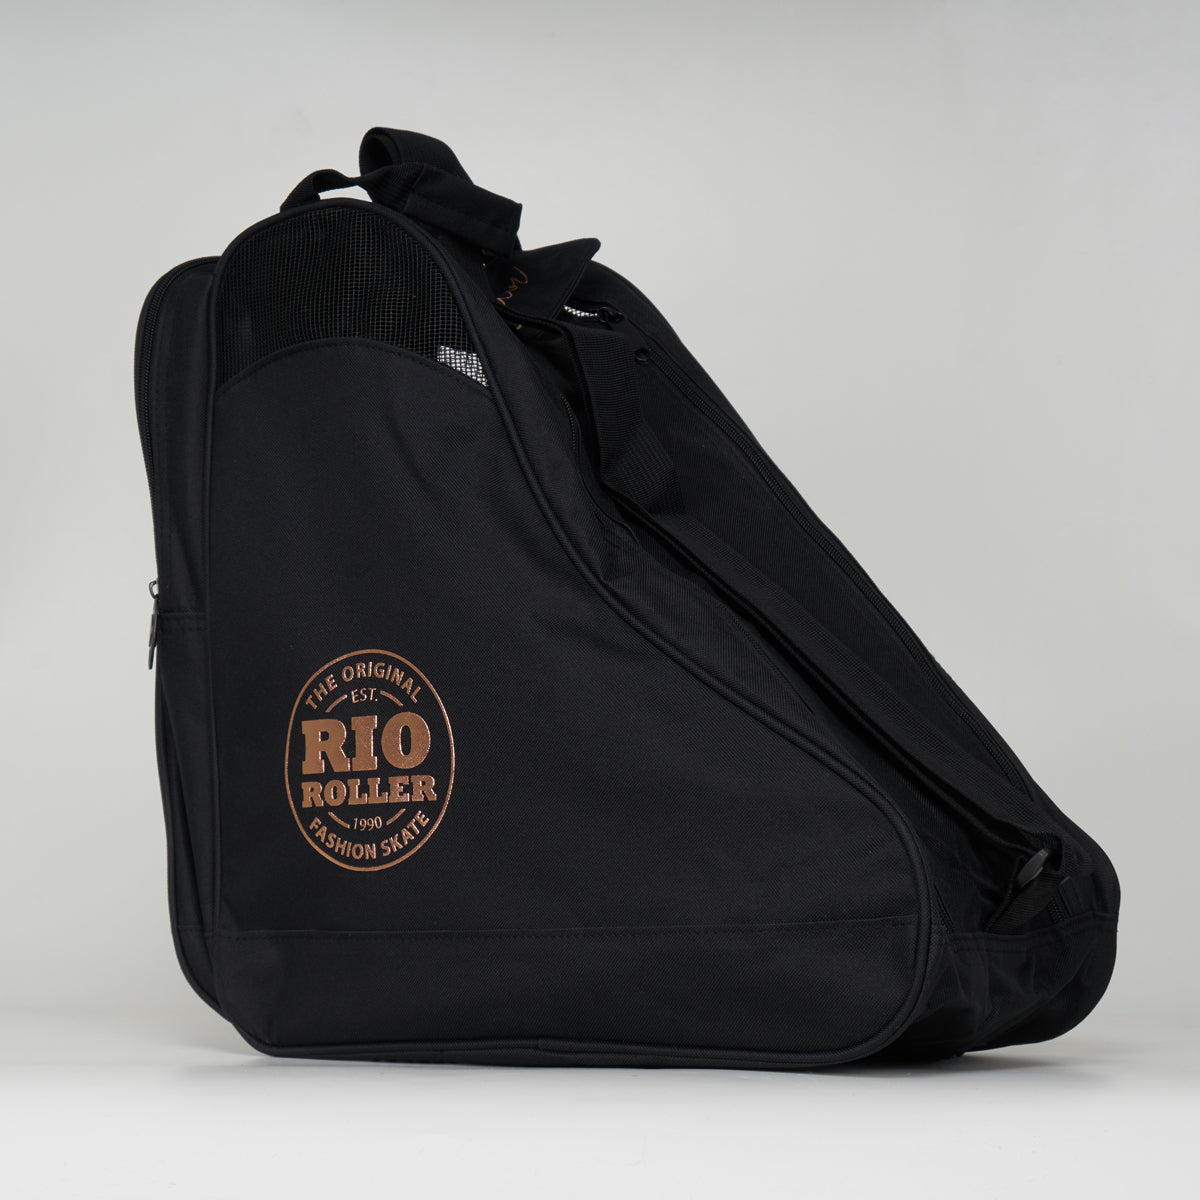 Rio Roller Rose Skate Bag - Black